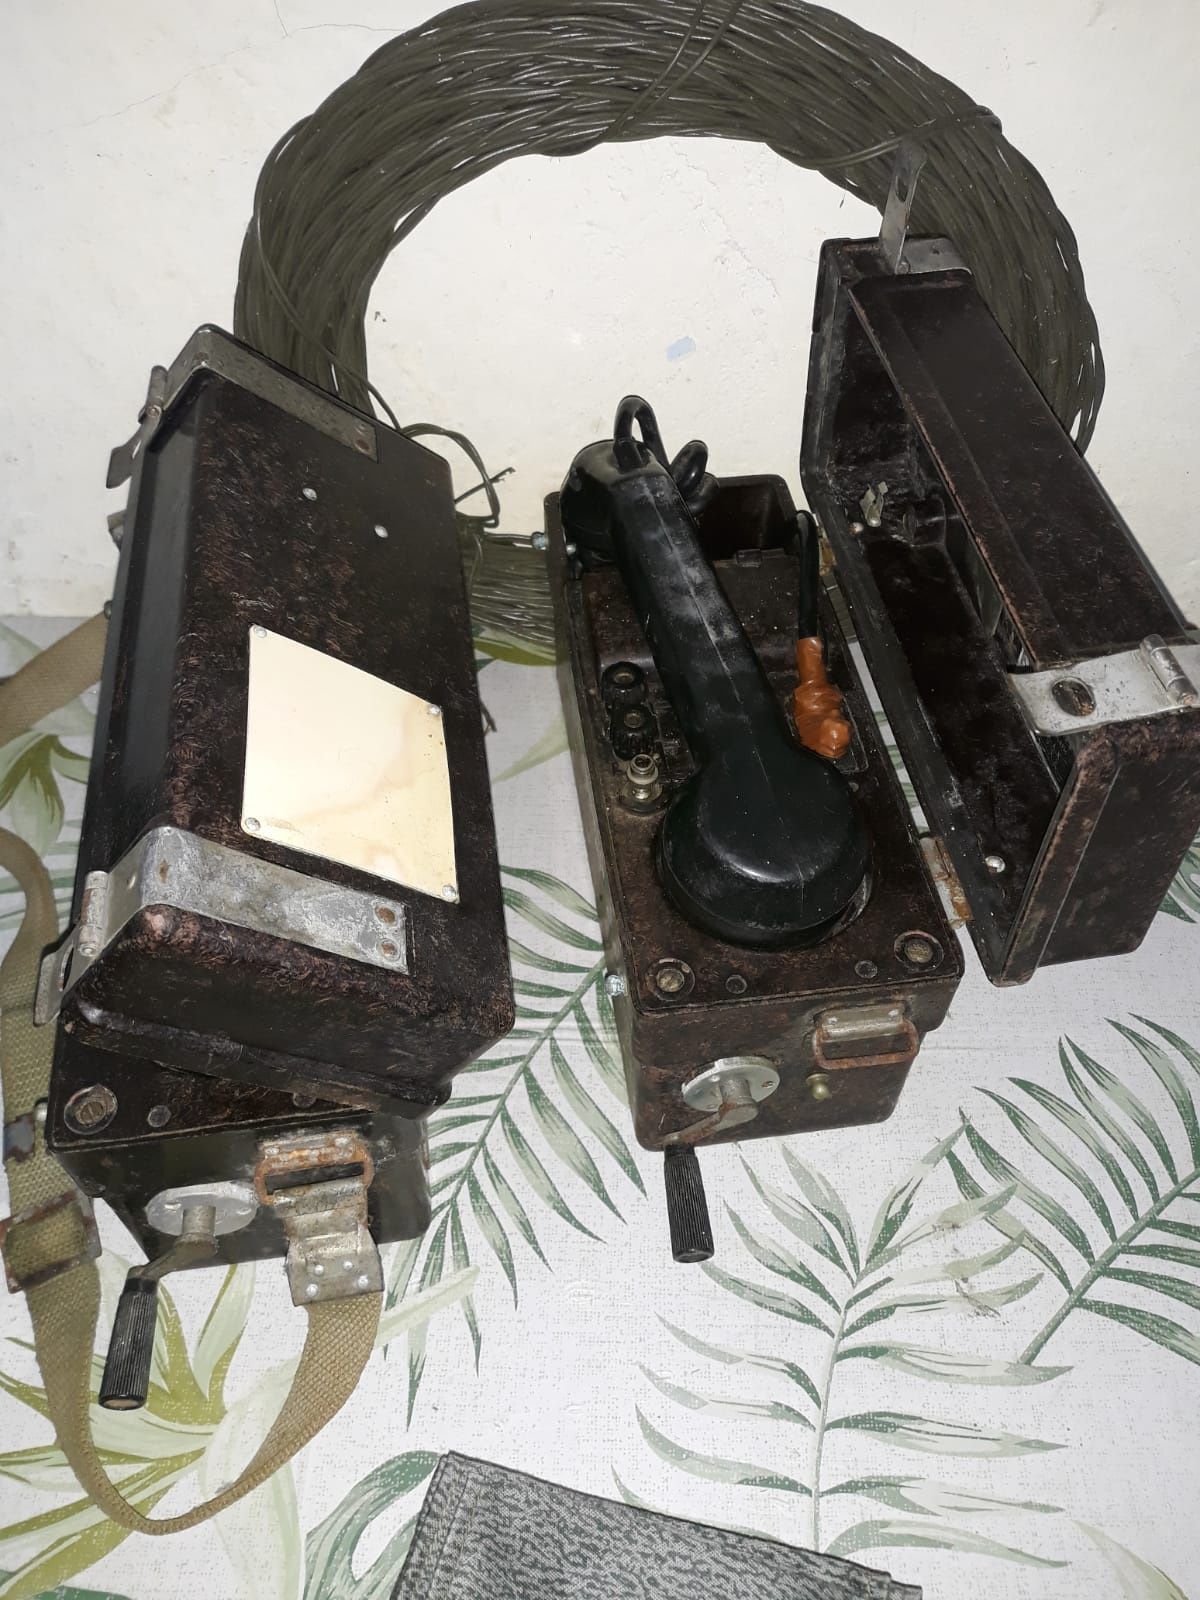 Kompletny zestaw do komunikacji polowej, 2 x radiotelefon TAP 67